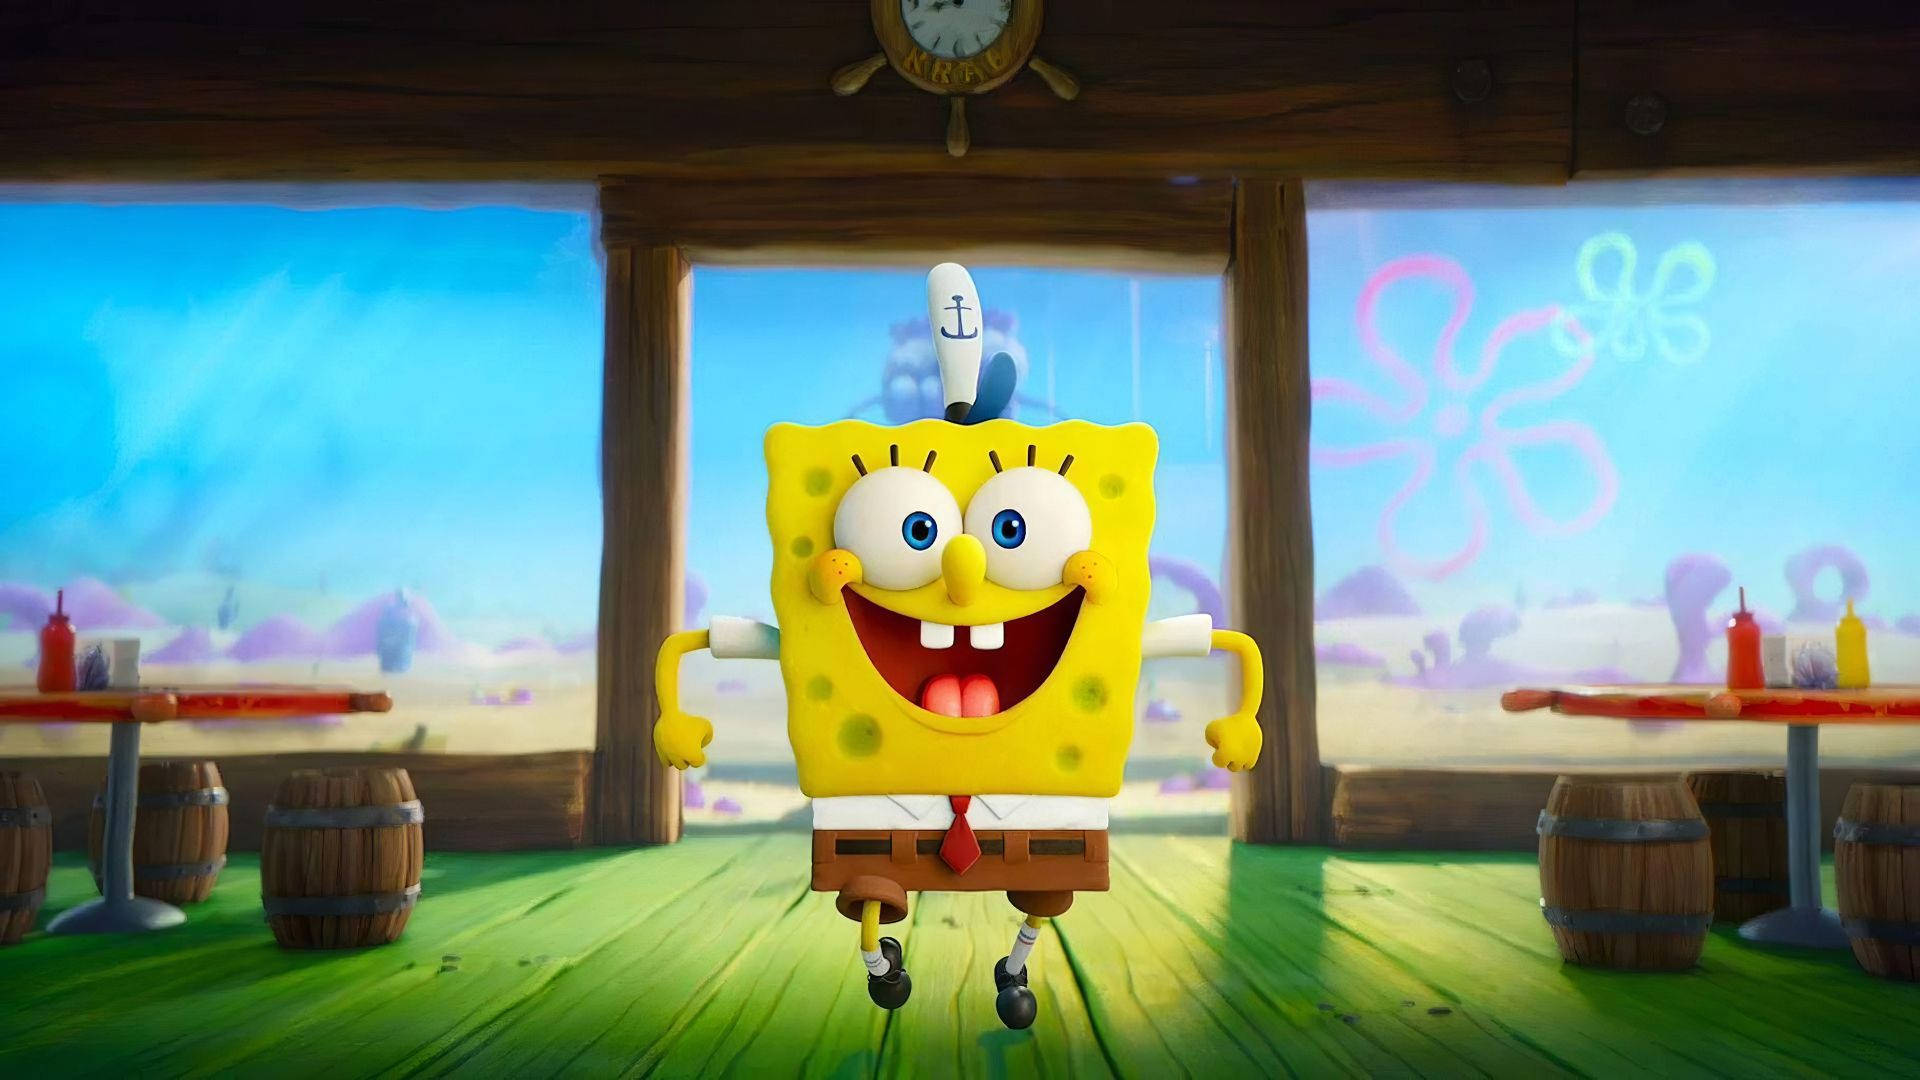 3d Spongebob Squarepants In Krusty Krab Background